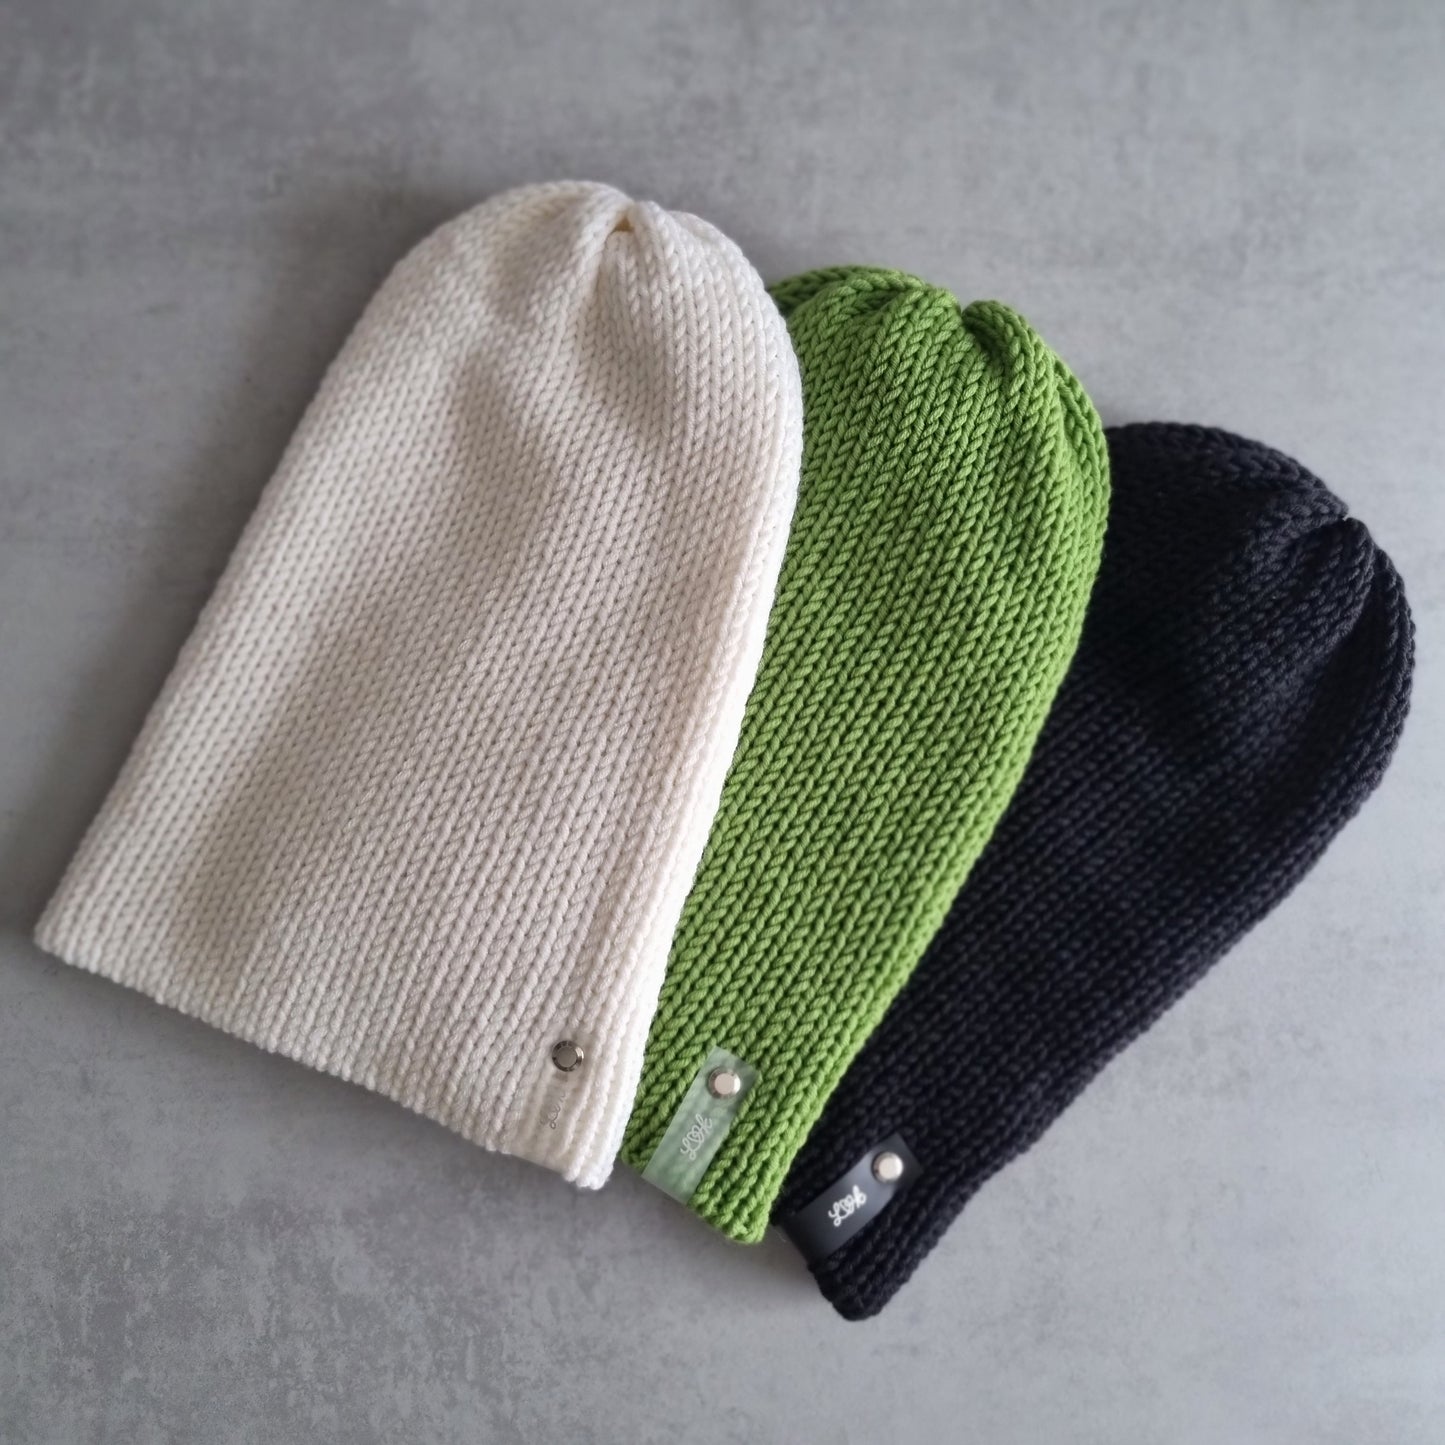 Bonnet tricoté à la main en 100% laine mérinos dans de nombreuses couleurs